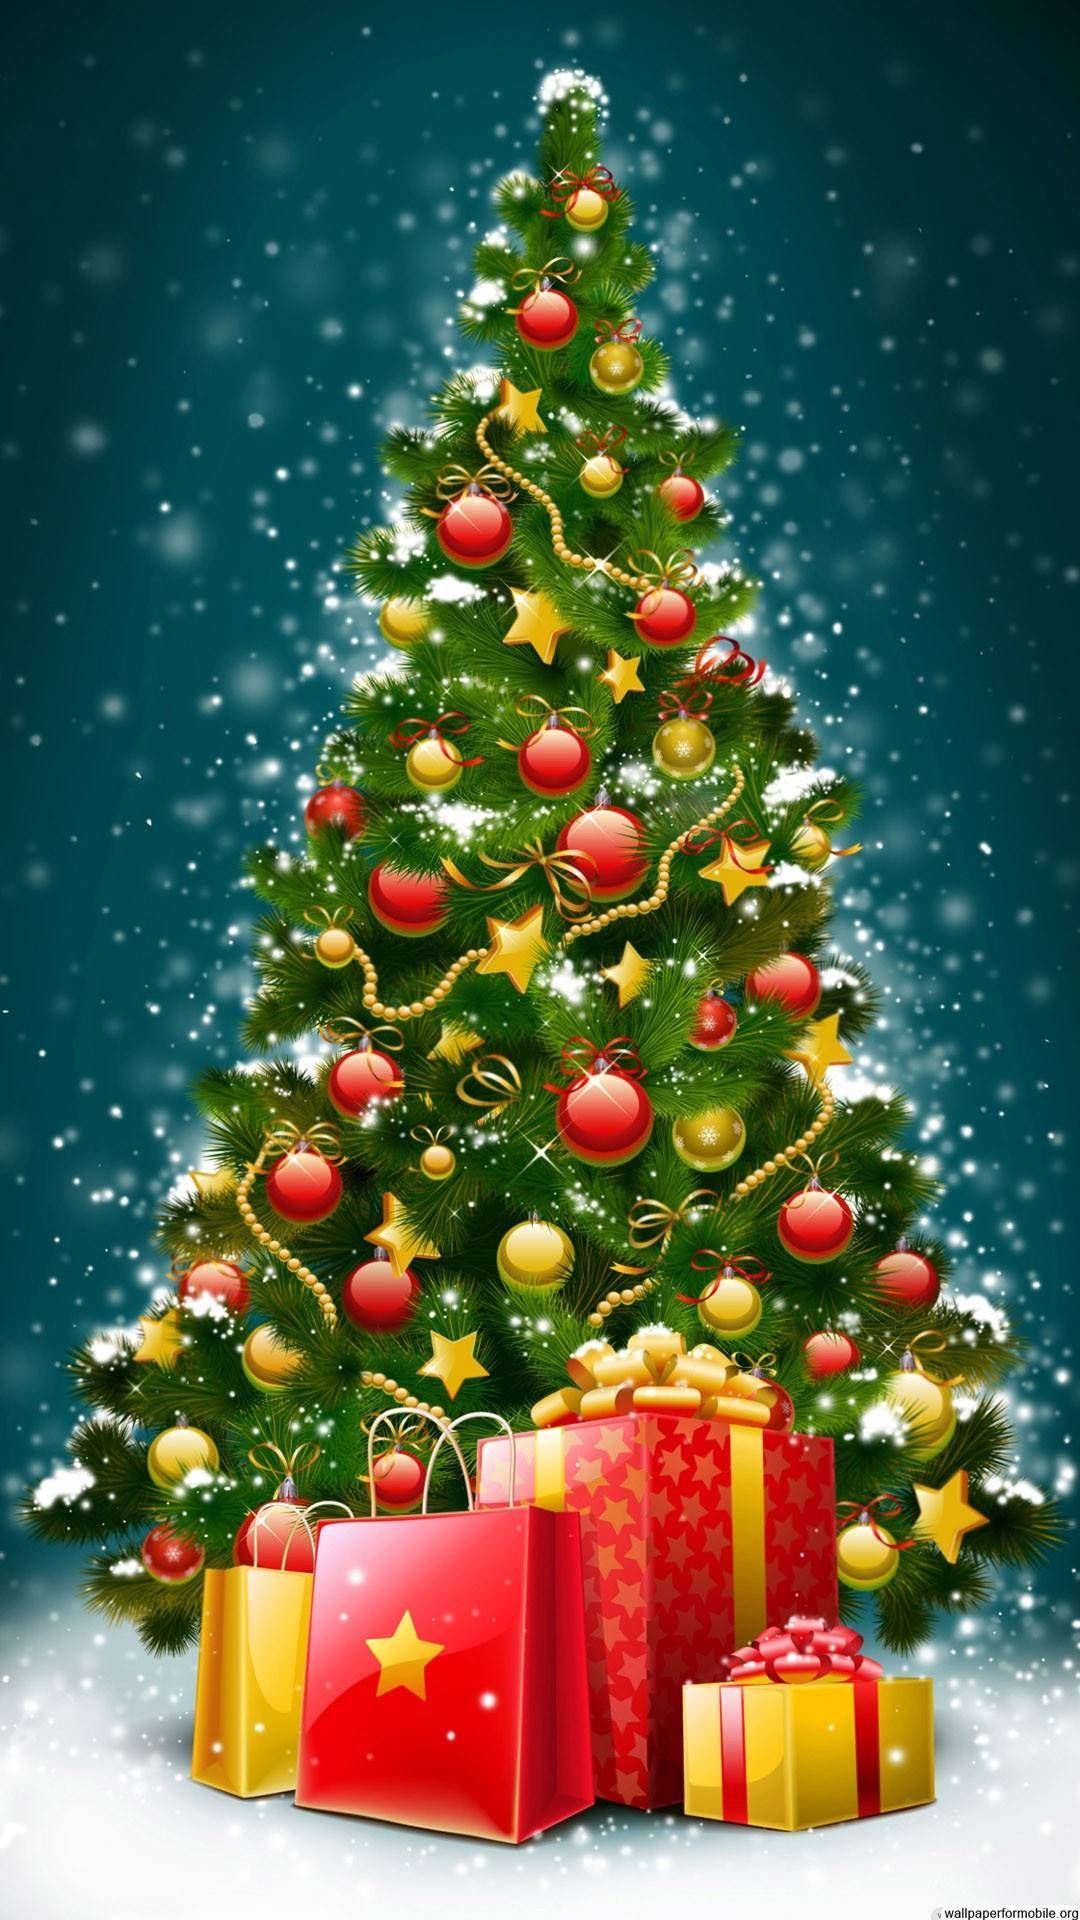 Christmas Tree Wallpapers